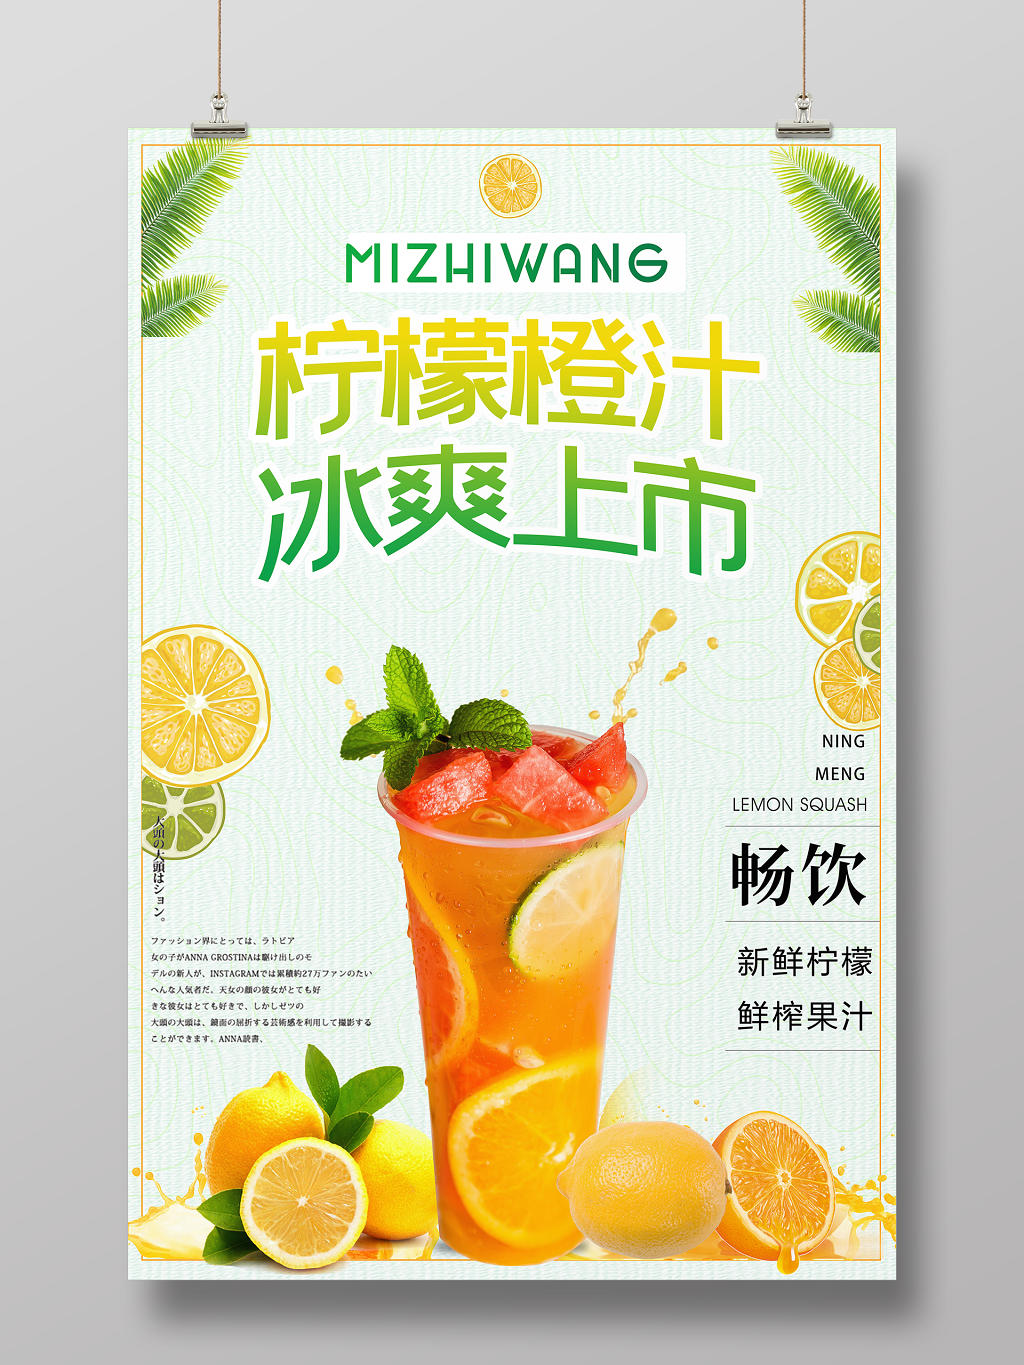 简约清新柠檬橙汁冰爽上市水果宣传海报